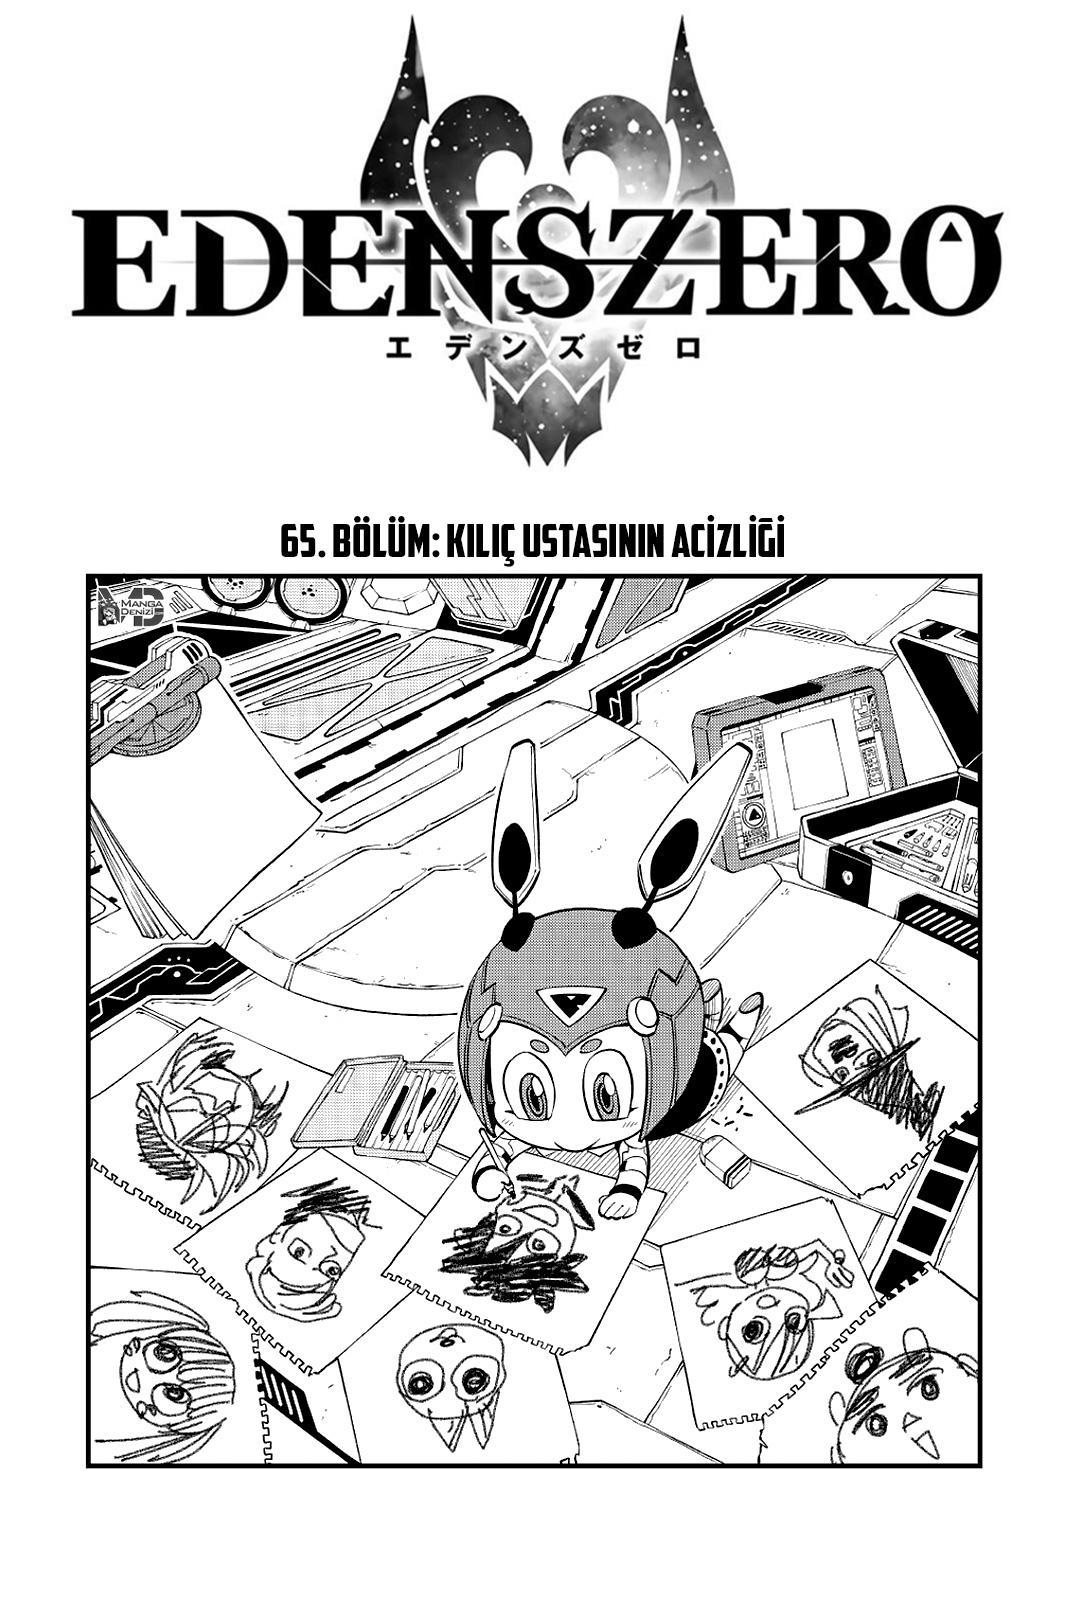 Eden's Zero mangasının 065 bölümünün 2. sayfasını okuyorsunuz.